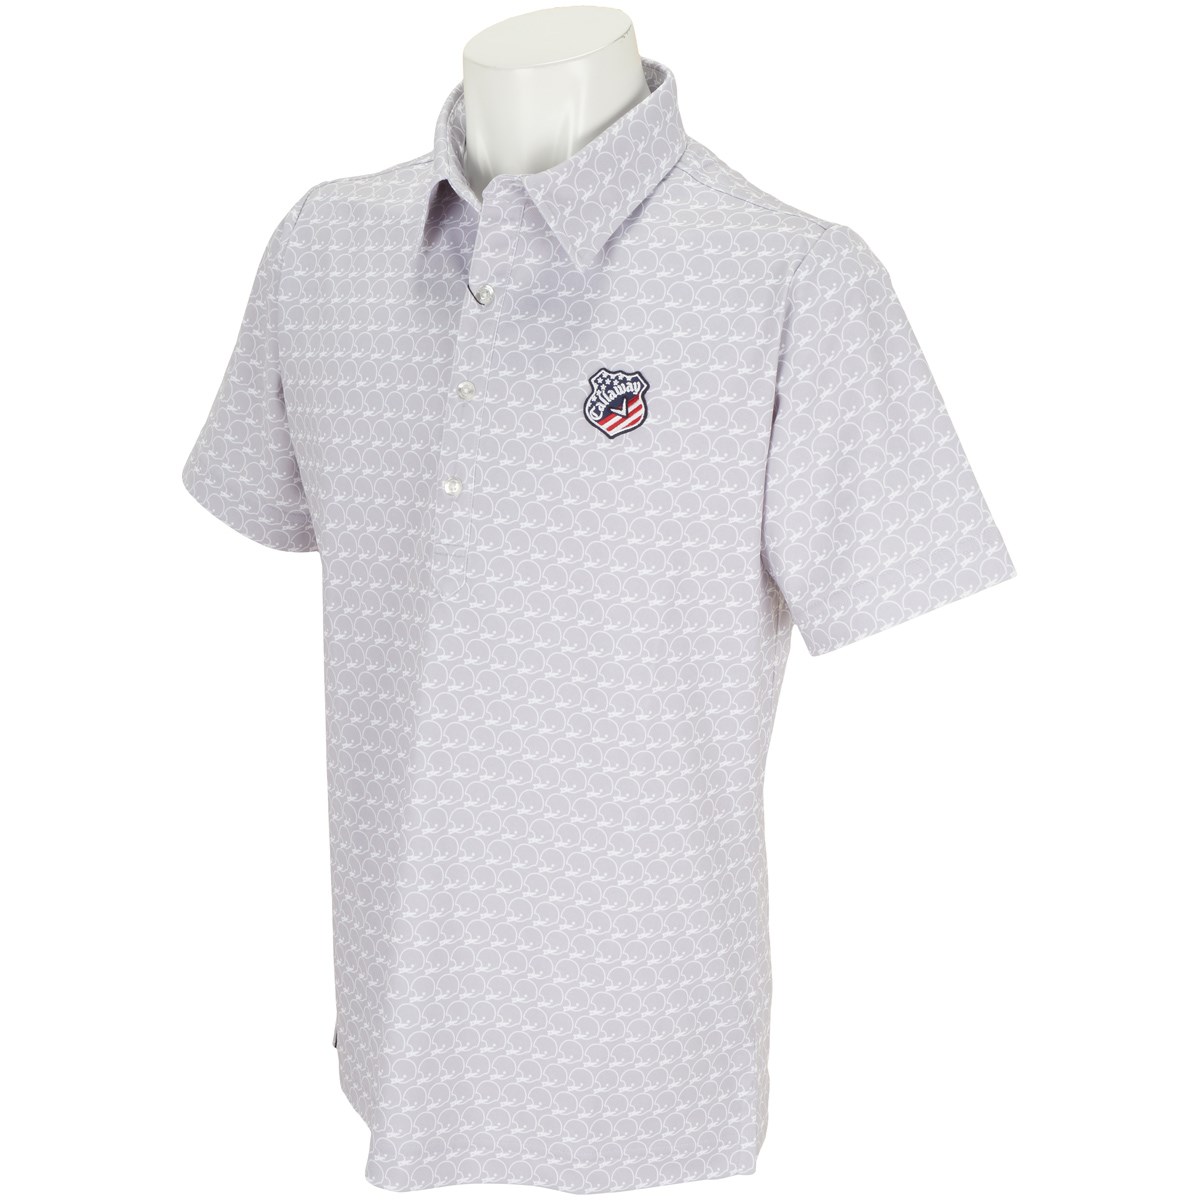 キャロウェイゴルフ(Callaway Golf) メット柄プリントレギュラーカラー半袖ポロシャツ 